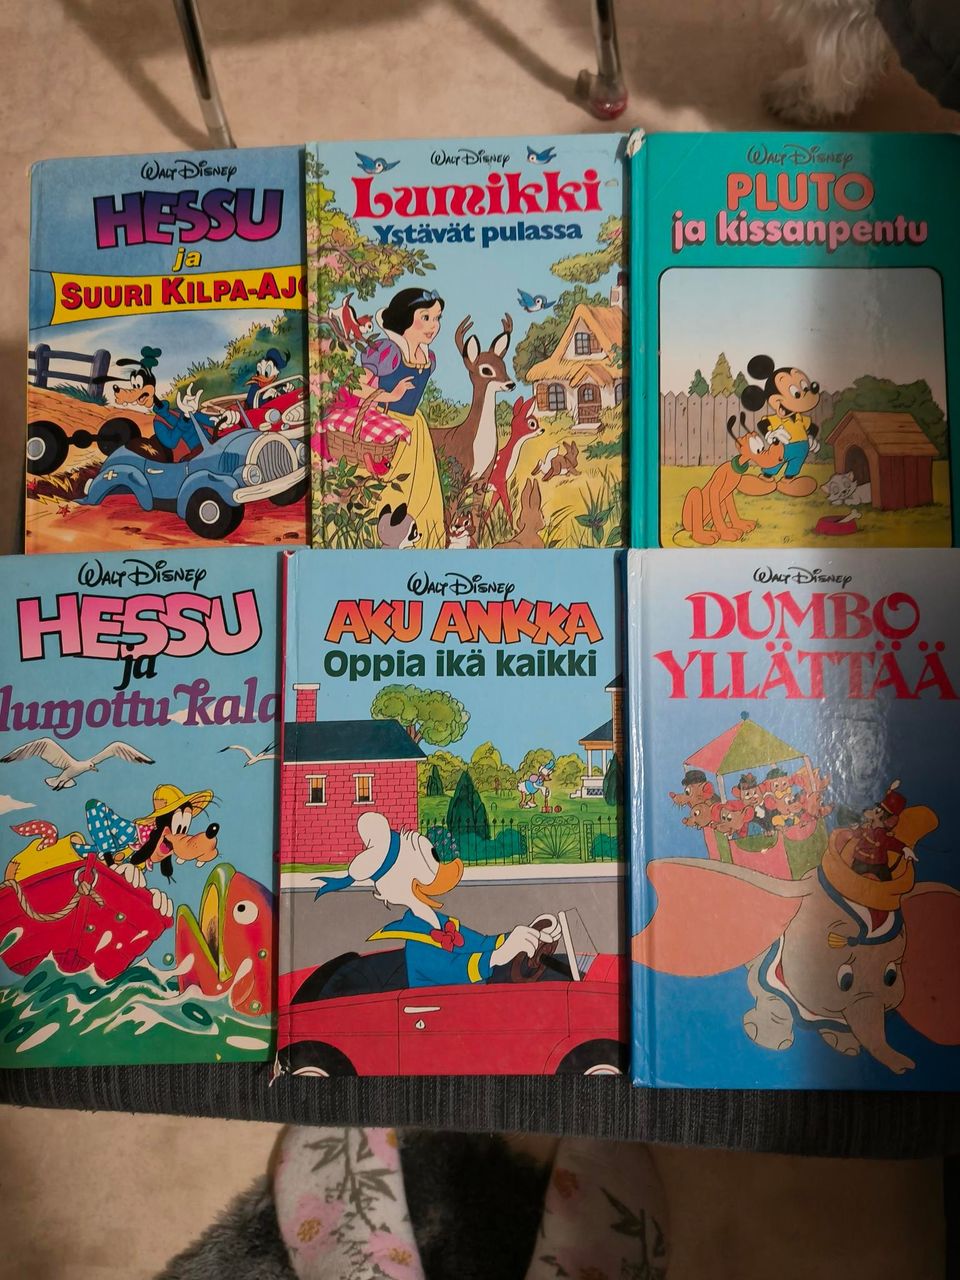 Disneyn kirjoja